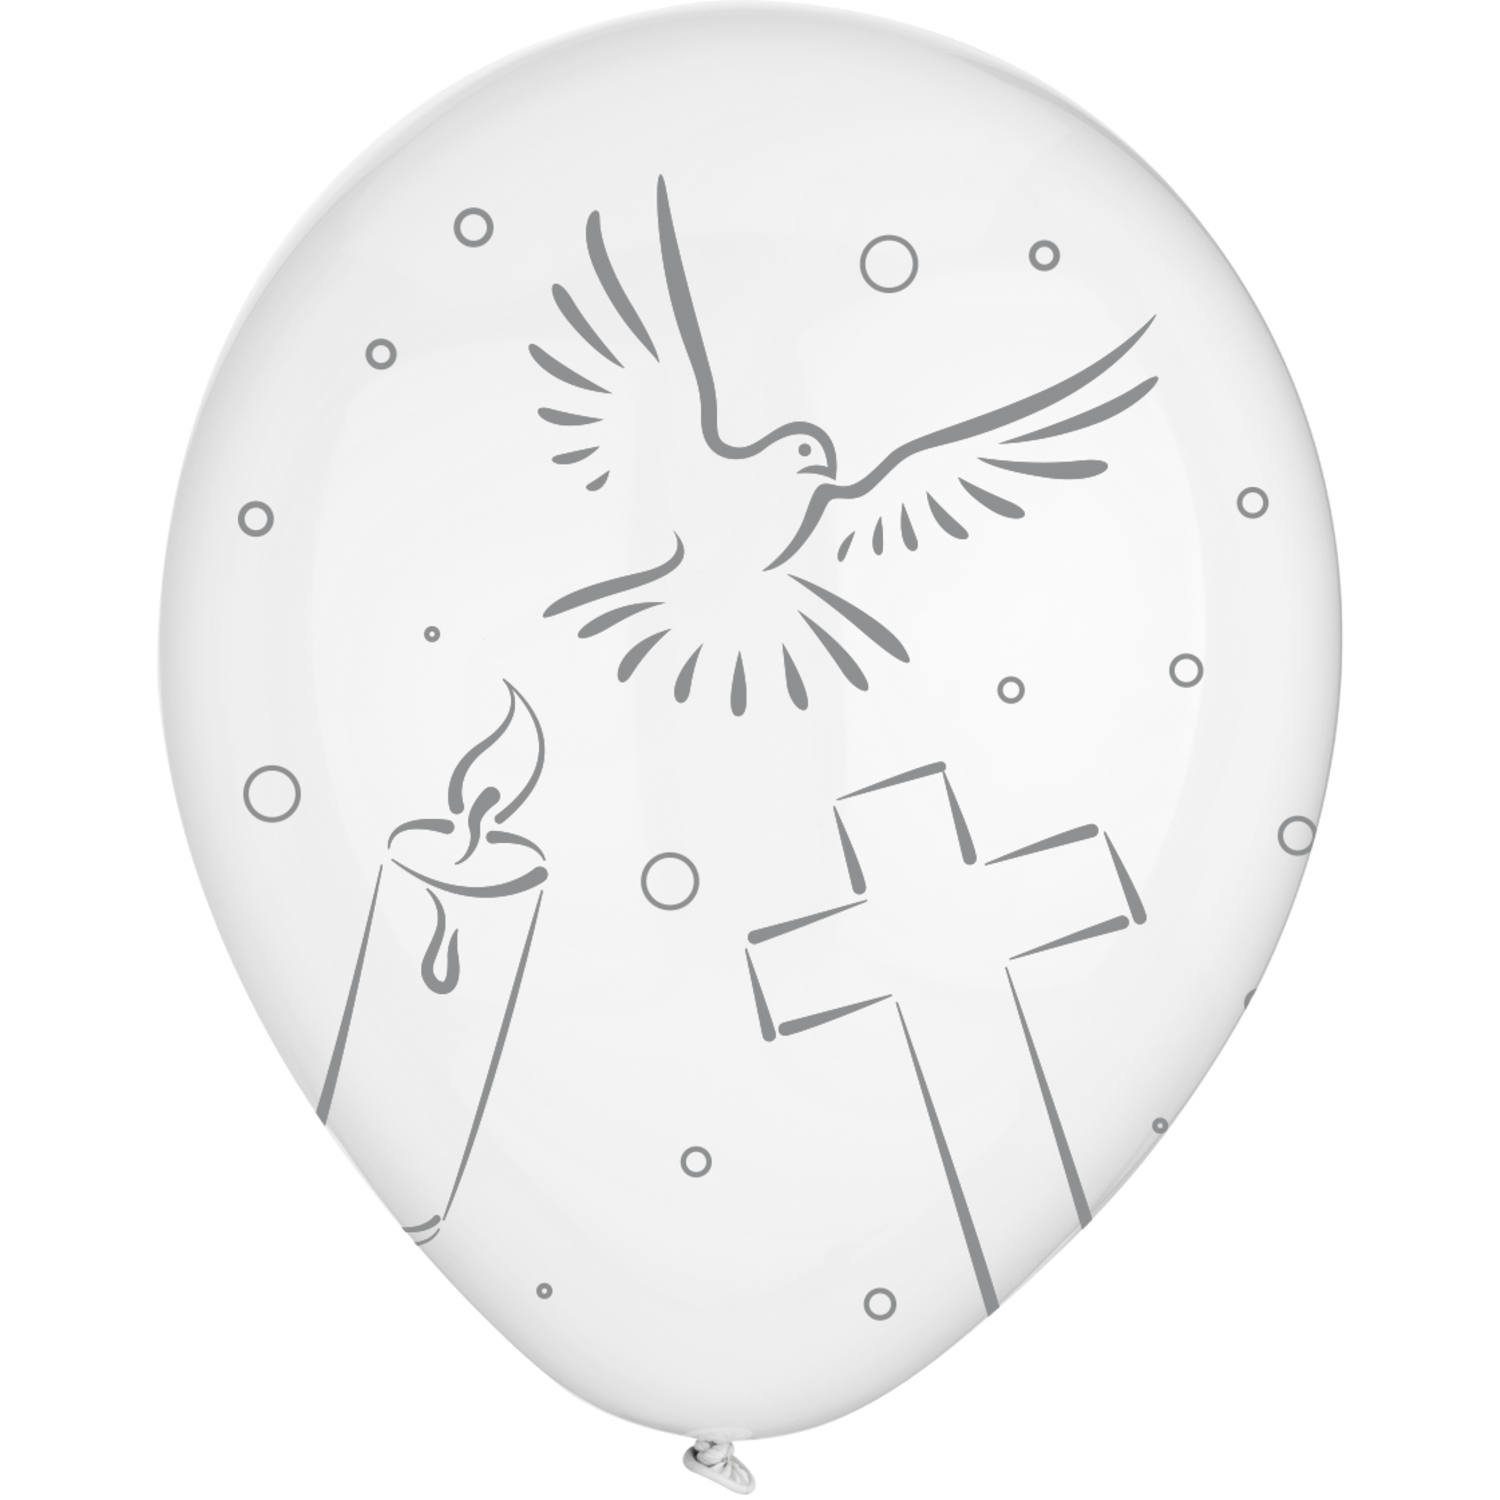 Luftballonwelt Luftballon 24 St. Ballons kirchliche Motive Konfirmation Kommunion Taufe weiß, ca. 30 cm im Durchmesser